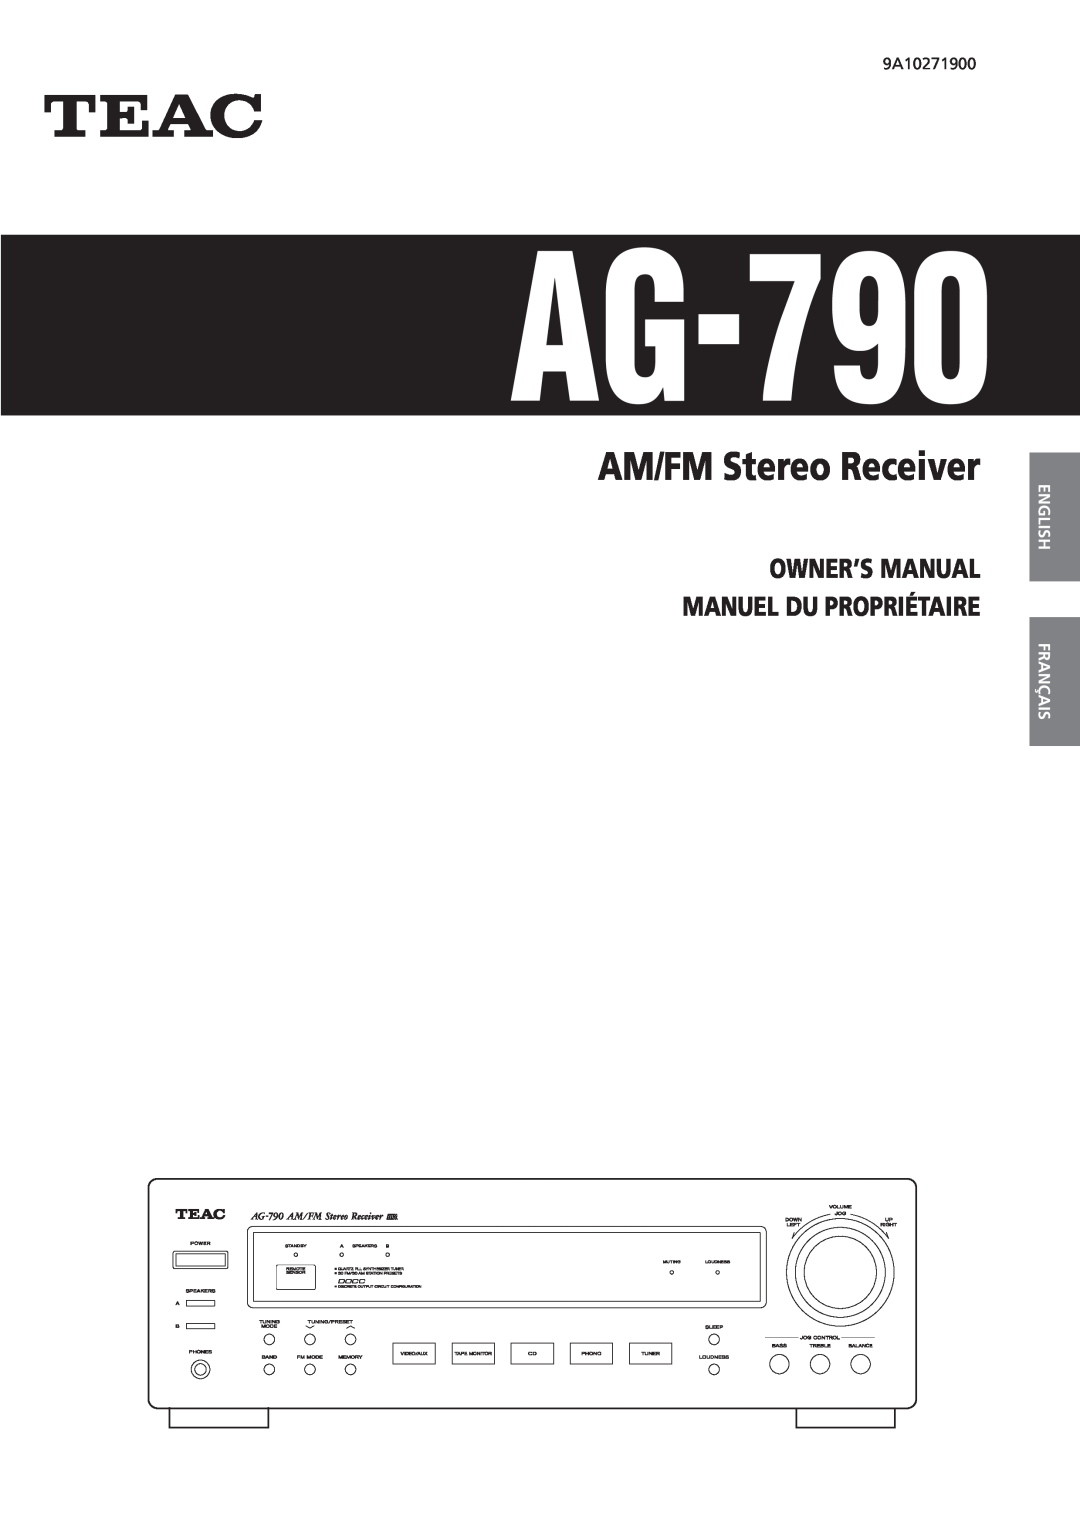 Teac AG-790 owner manual English Français Español Deutsch Italiano, Nederlands, AM/FM Stereo Receiver 